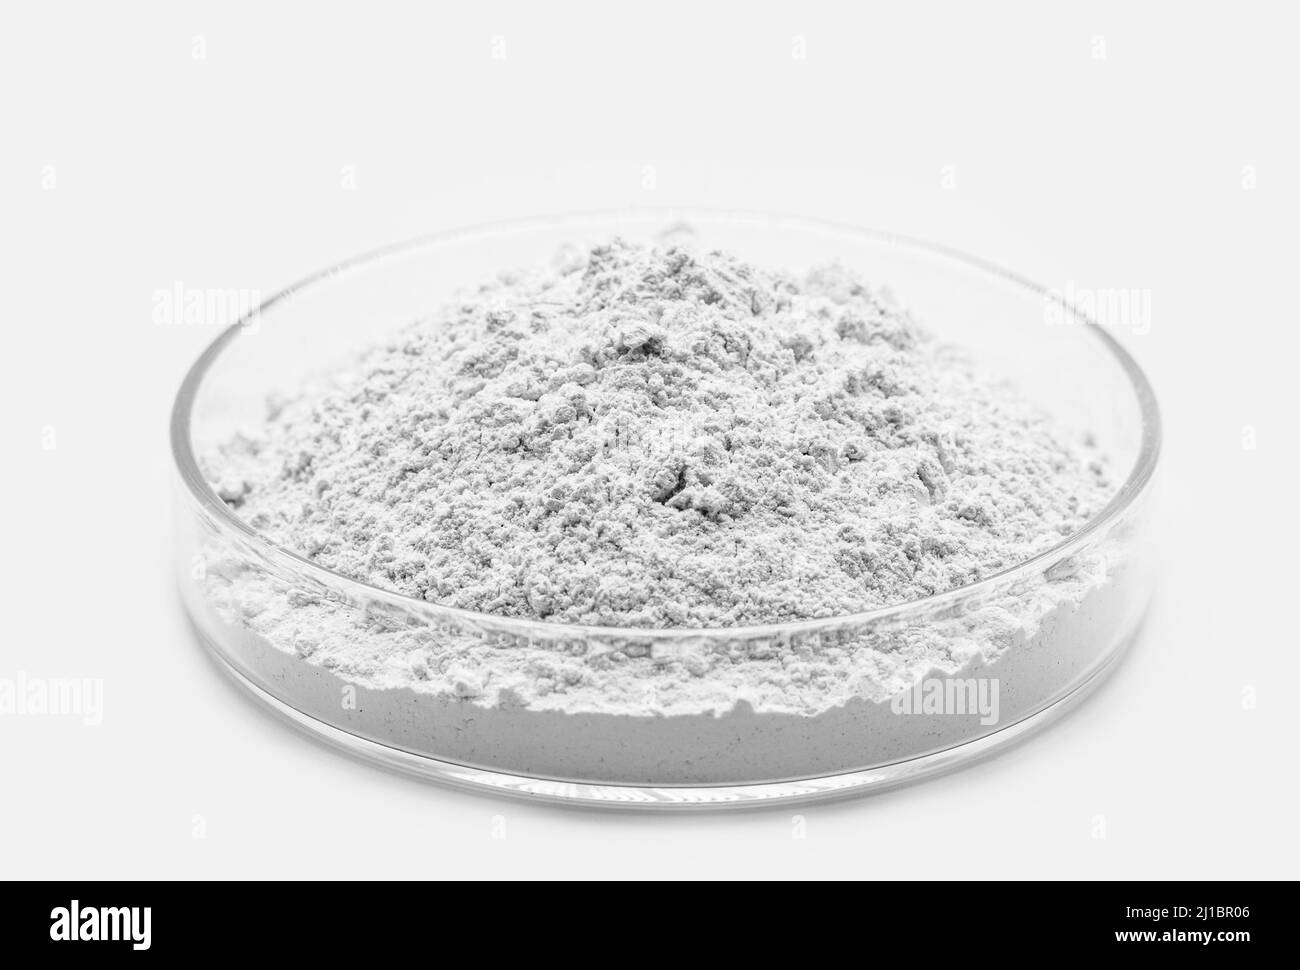 Zinnchlorid oder Zinnchlorid ist ein weißer kristalliner Feststoff, der als Reduktionsmittel in sauren Lösungen und in elektrolytischen Bädern für Elektroplat verwendet wird Stockfoto